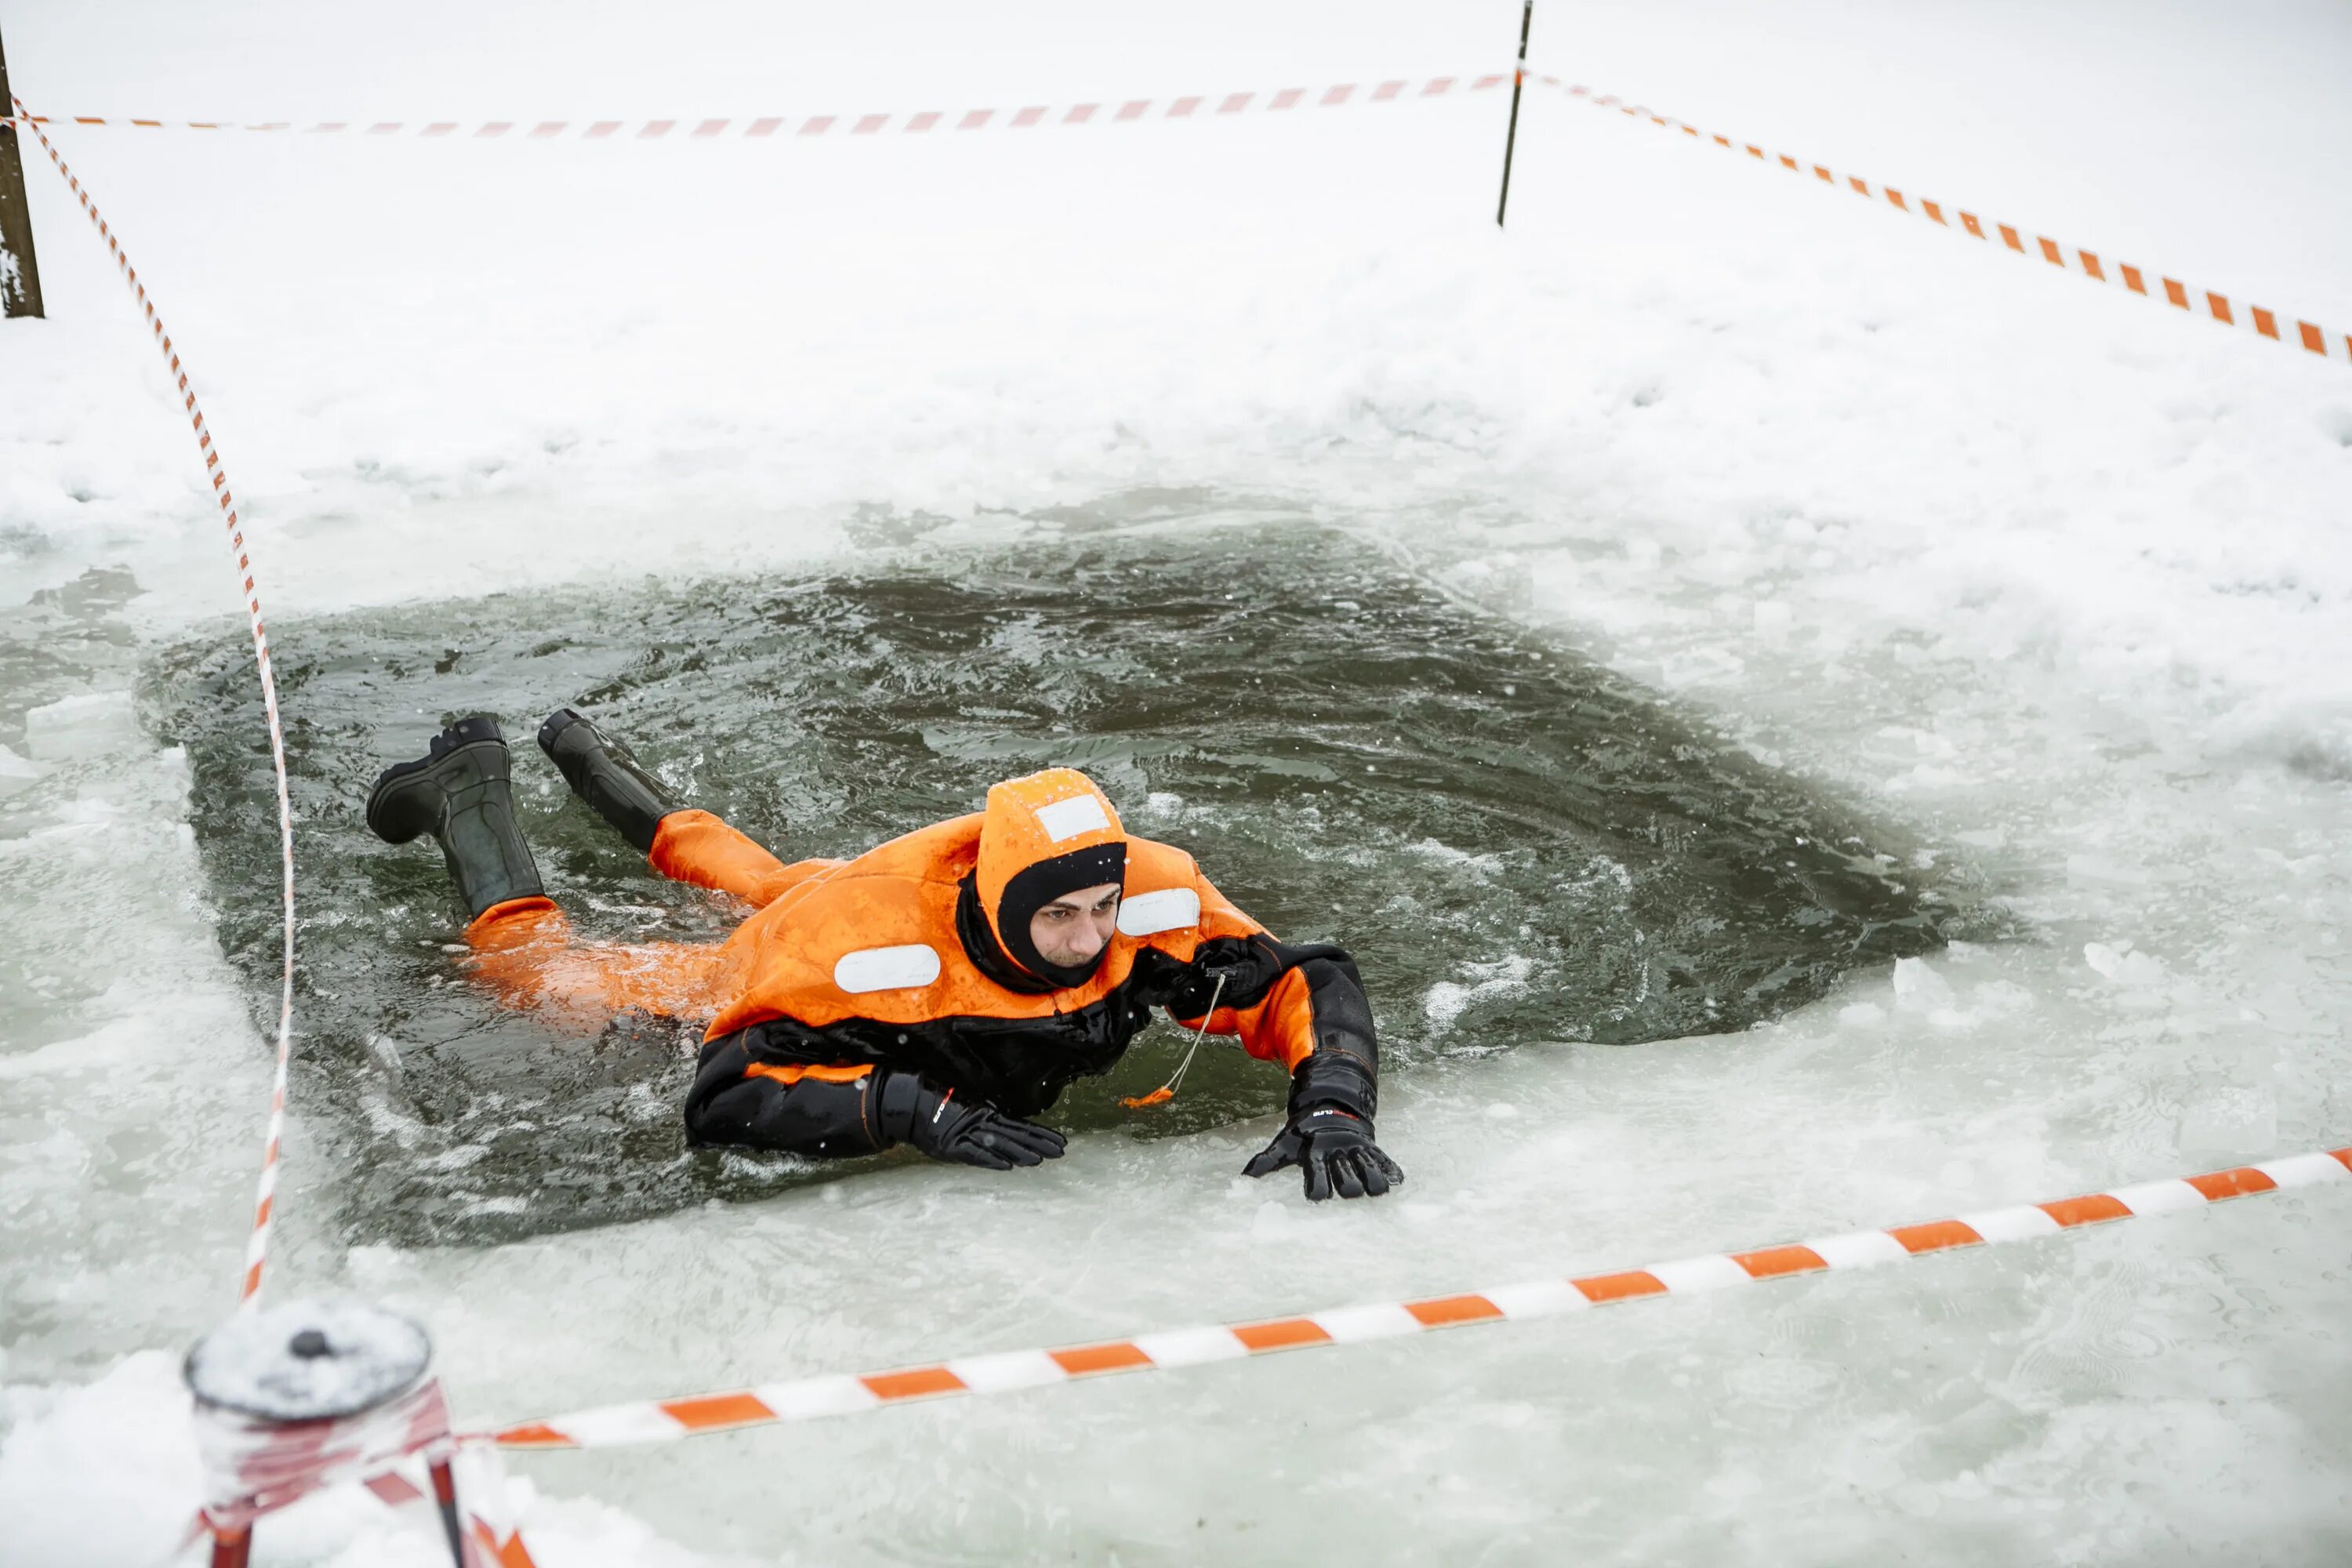 Спасение человека провалившегося под лед. Человек провалился под лед. МЧС России спасает человека на льду. Оказание помощи провалившемуся под лед.